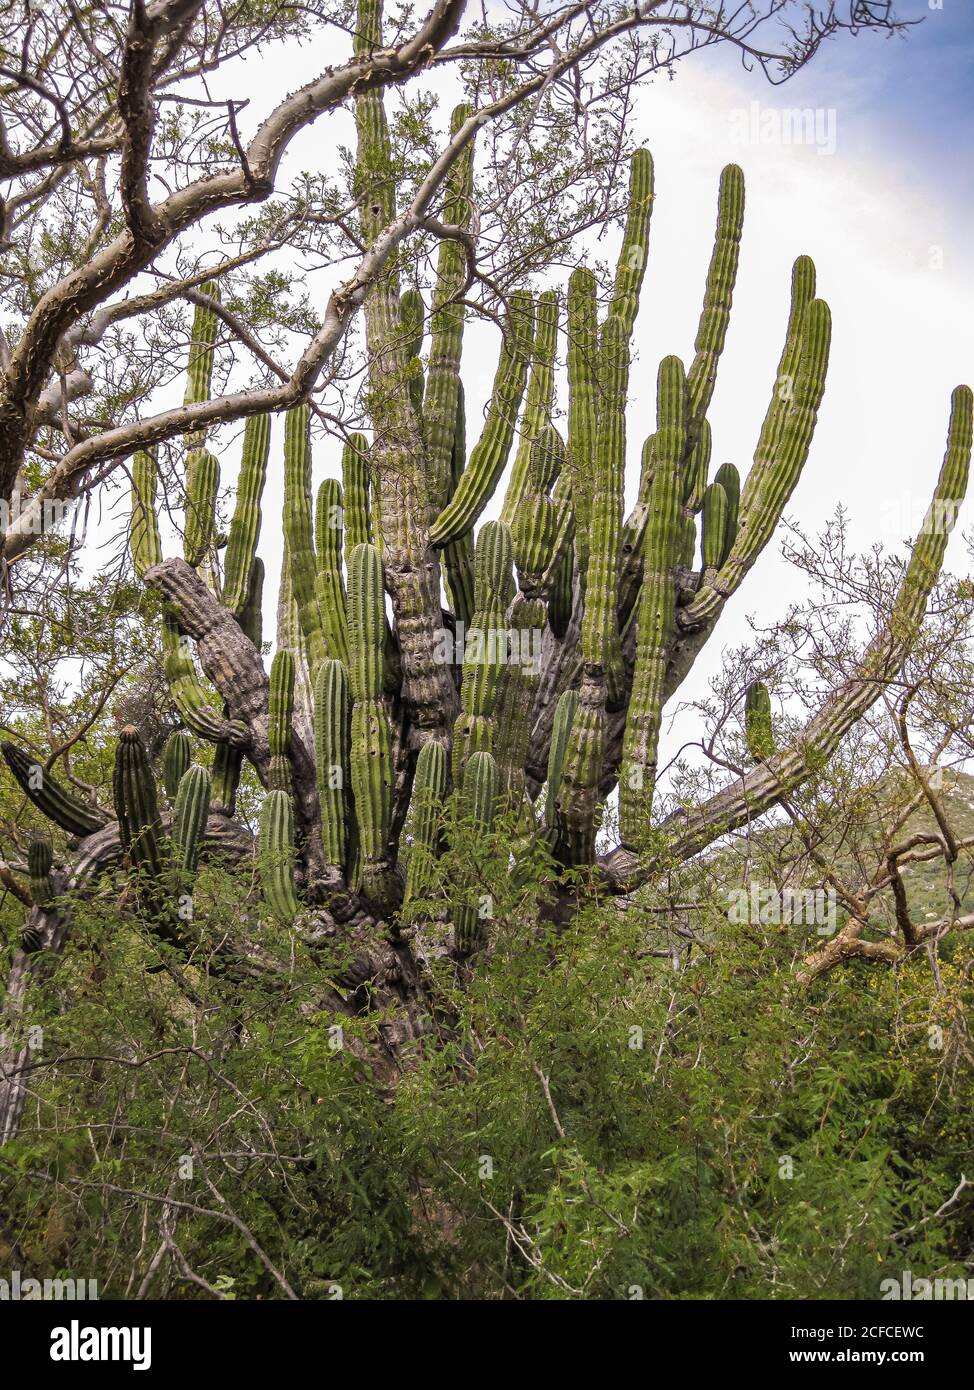 Baja California sur, Messico - 23 novembre 2008: Foreste secche della Sierra de la Laguna. Closeup di una grande corona di cactus elefante gigante verde contro l'argento Foto Stock